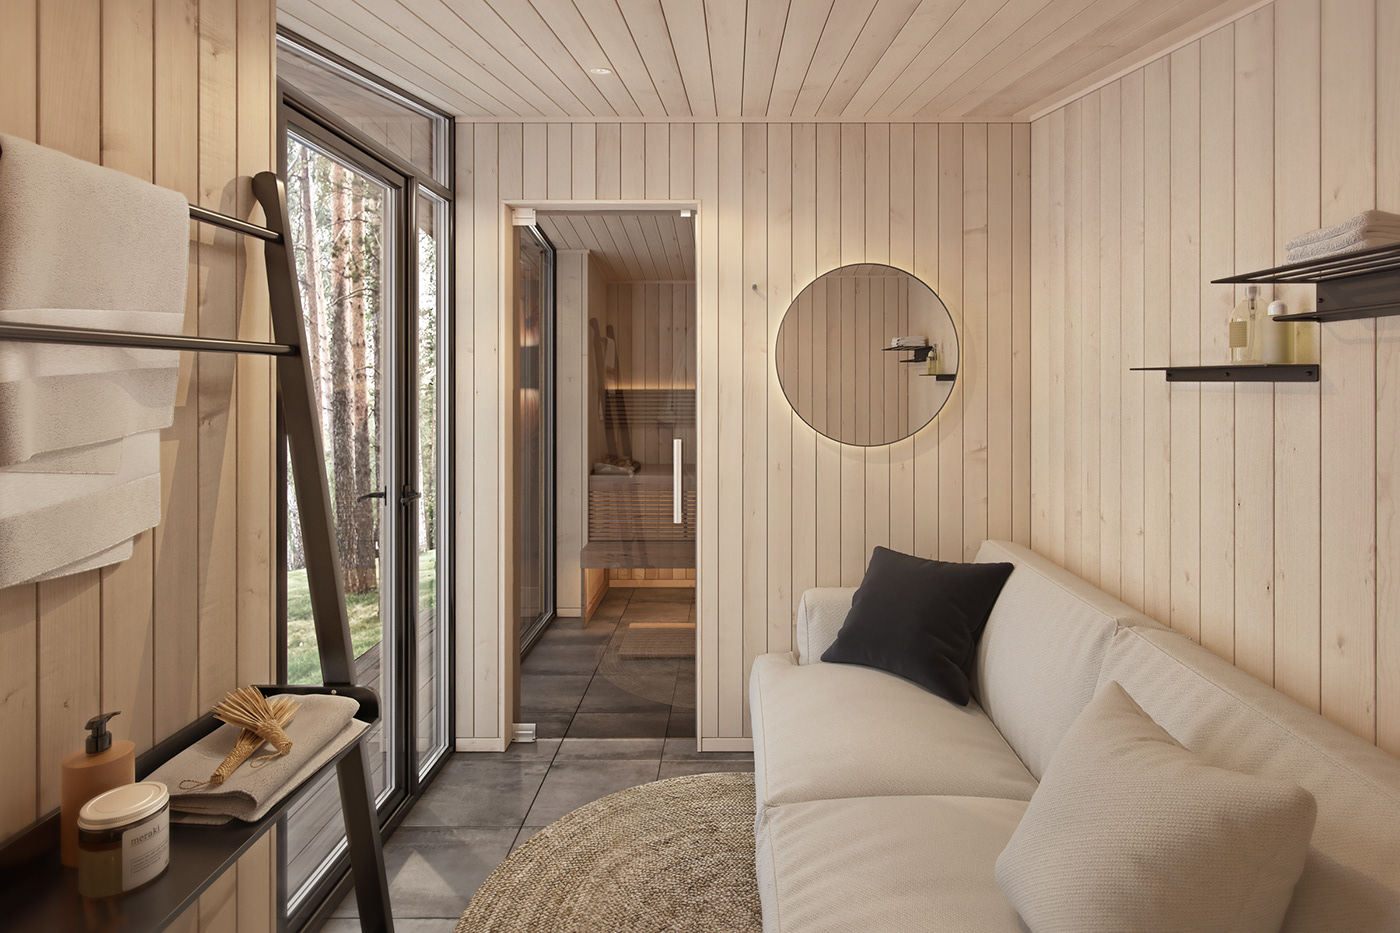 3ds max architecture interior design  Render Sauna Smallhouse visualization vray